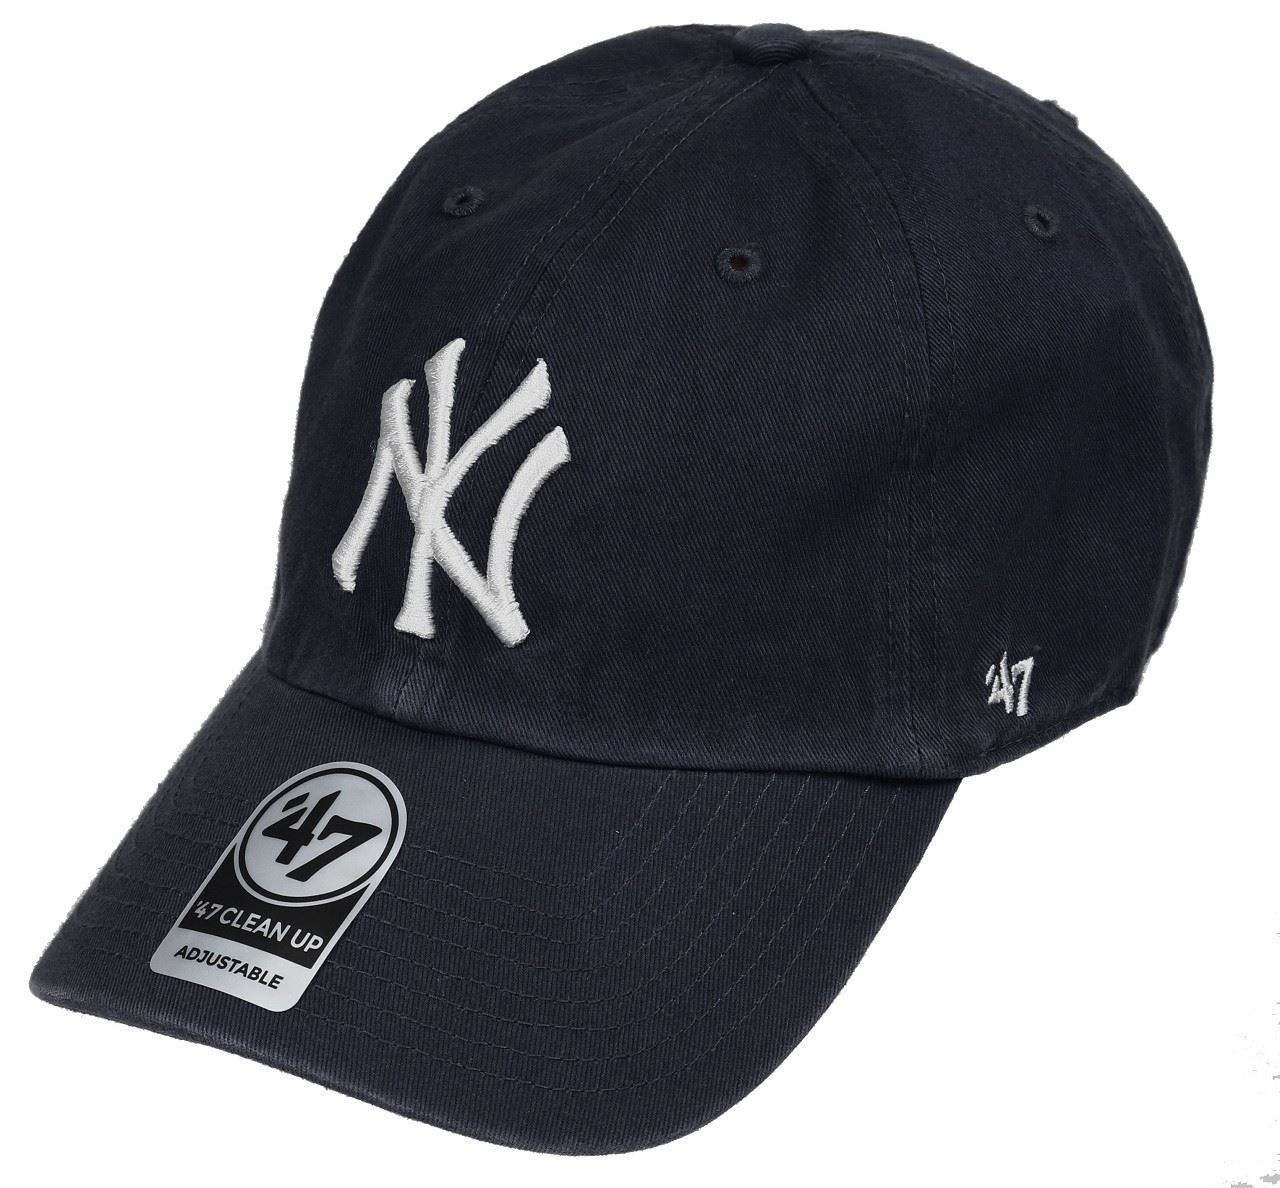 New York Yankees Vintage Navy MLB Clean Up Cap '47